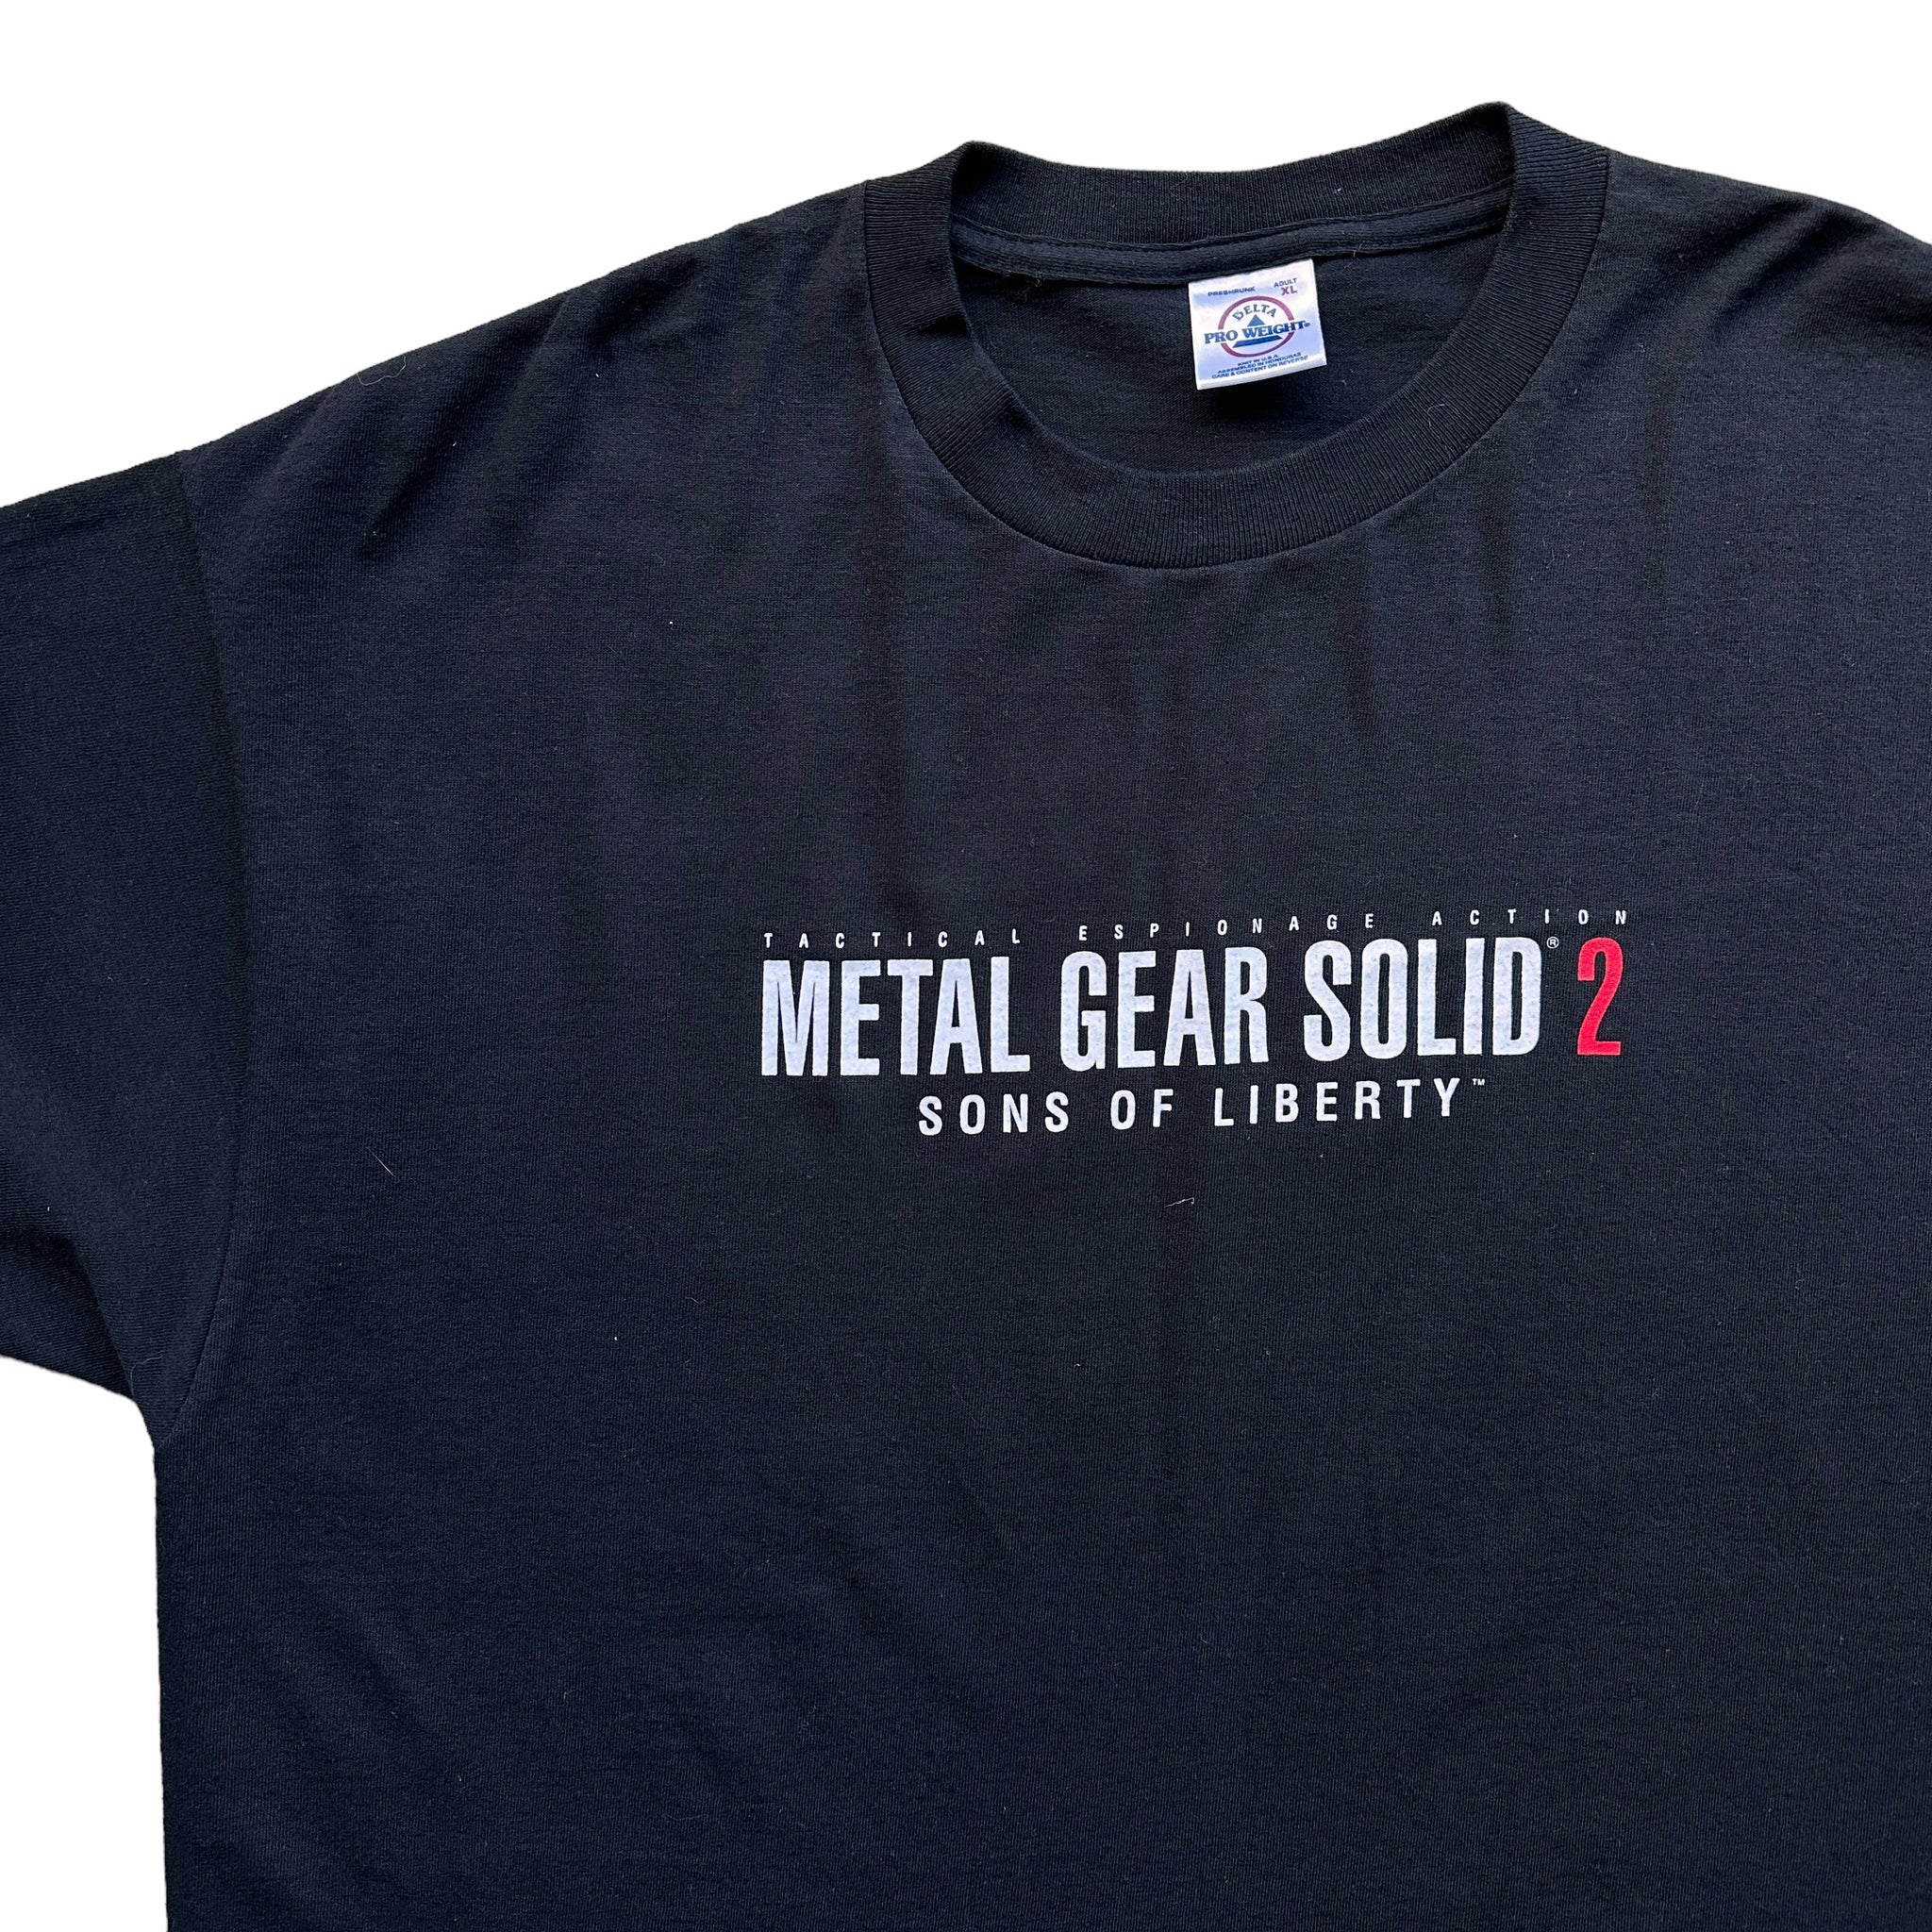 2001 Metal gear solid 2 tee XL